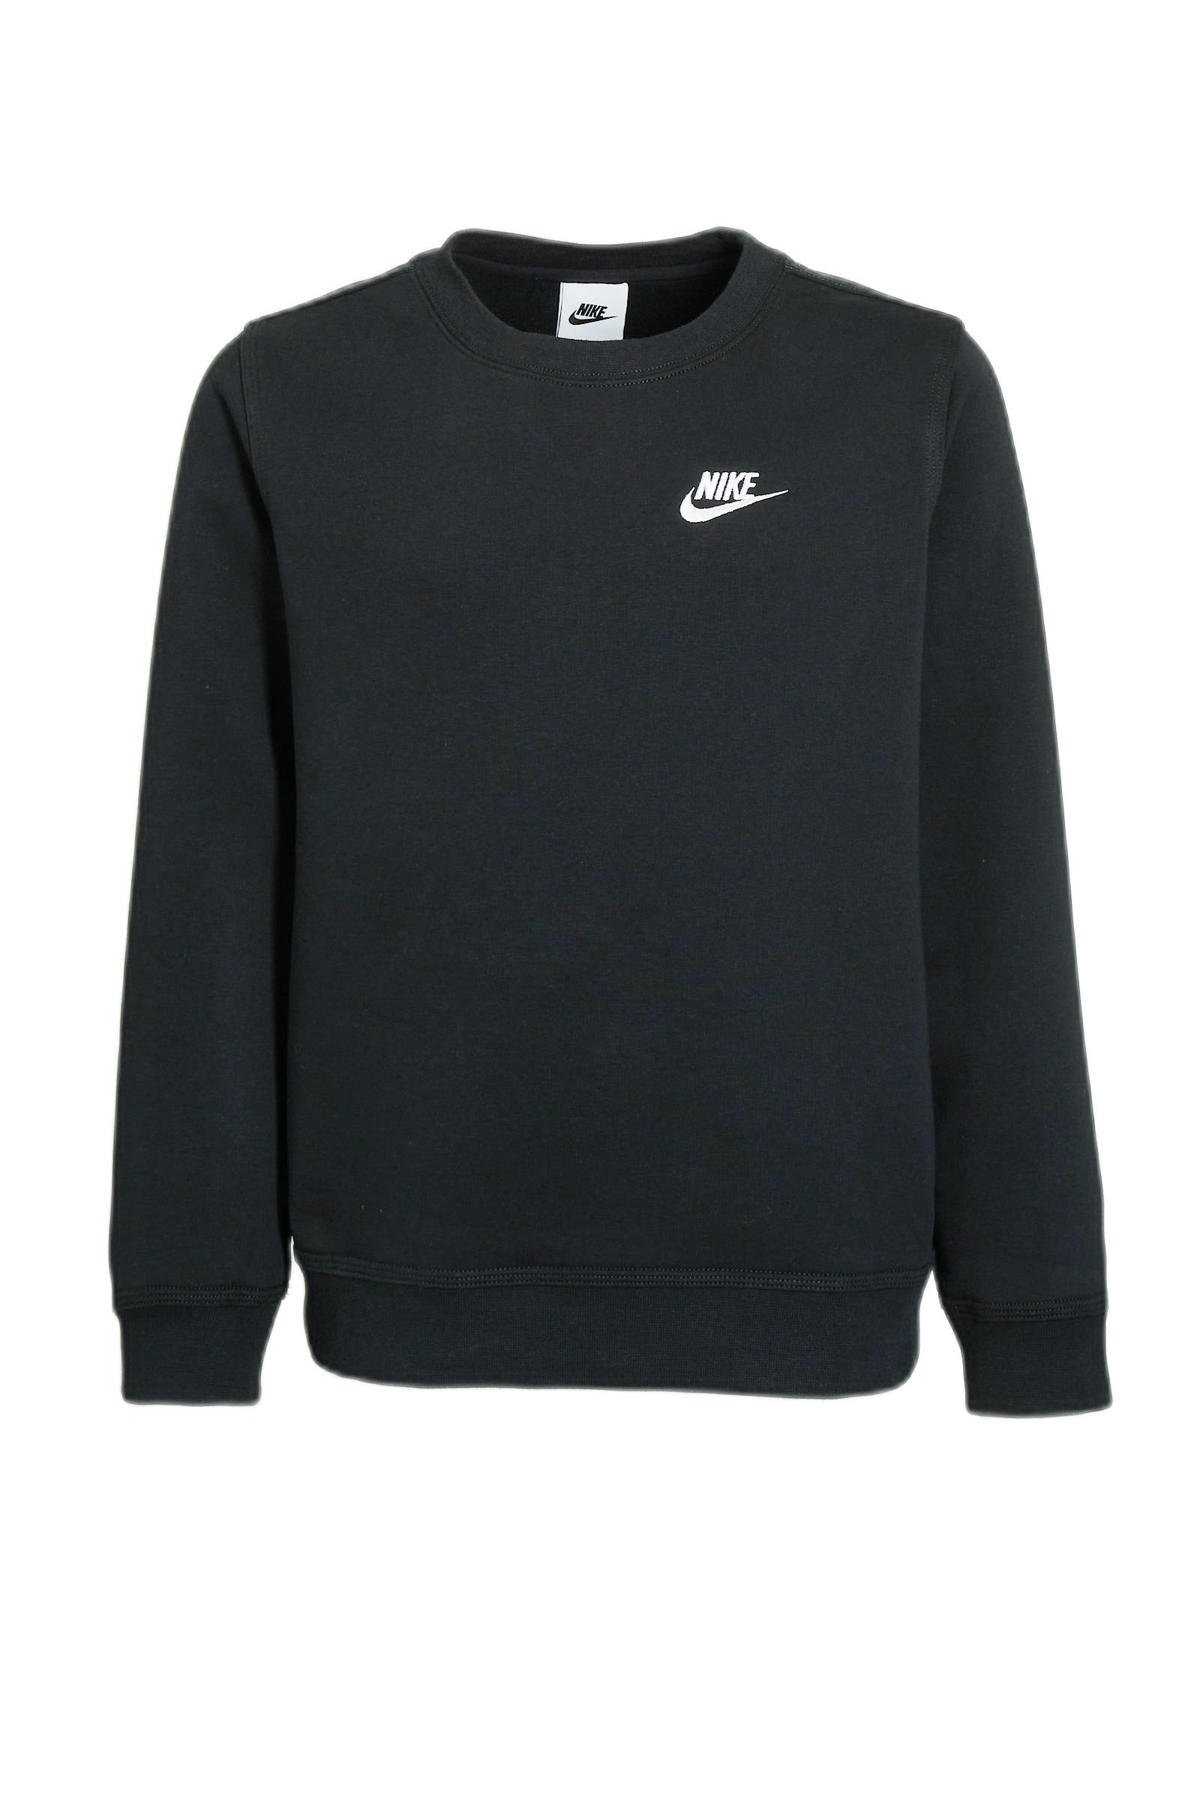 Bewijs Alfabetische volgorde Onbemand Nike trui met logo zwart kopen? | Morgen in huis | wehkamp